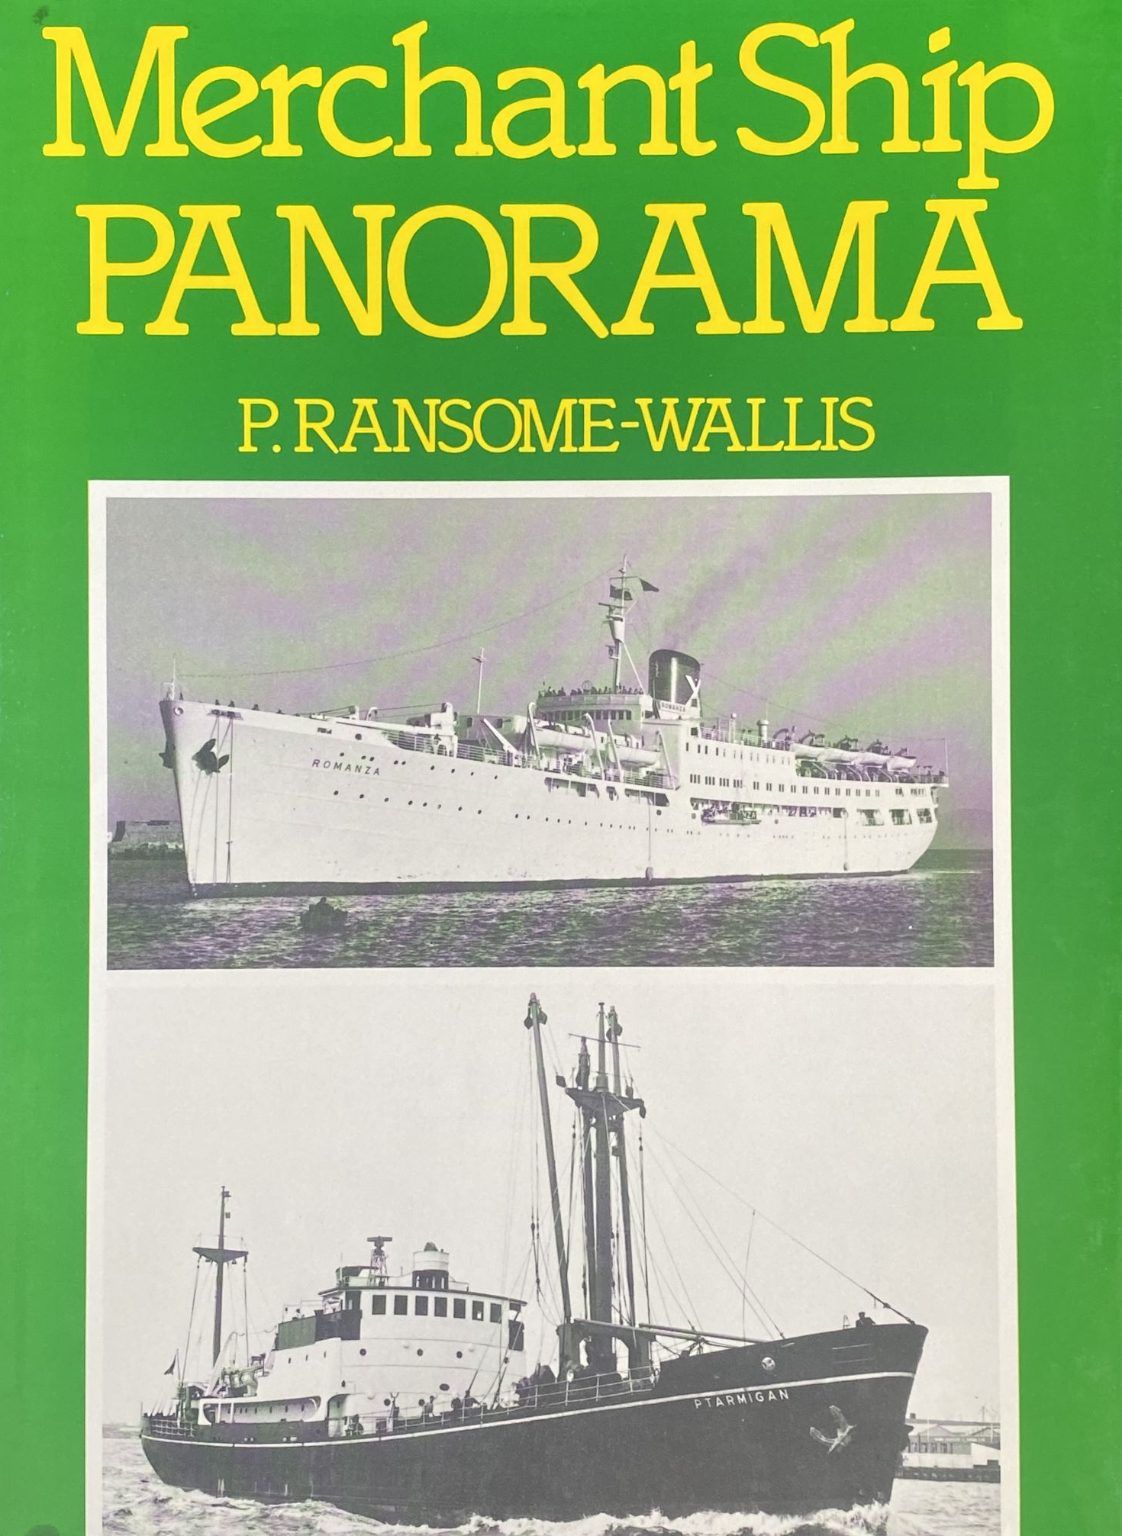 MERCHANT SHIP PANORAMA